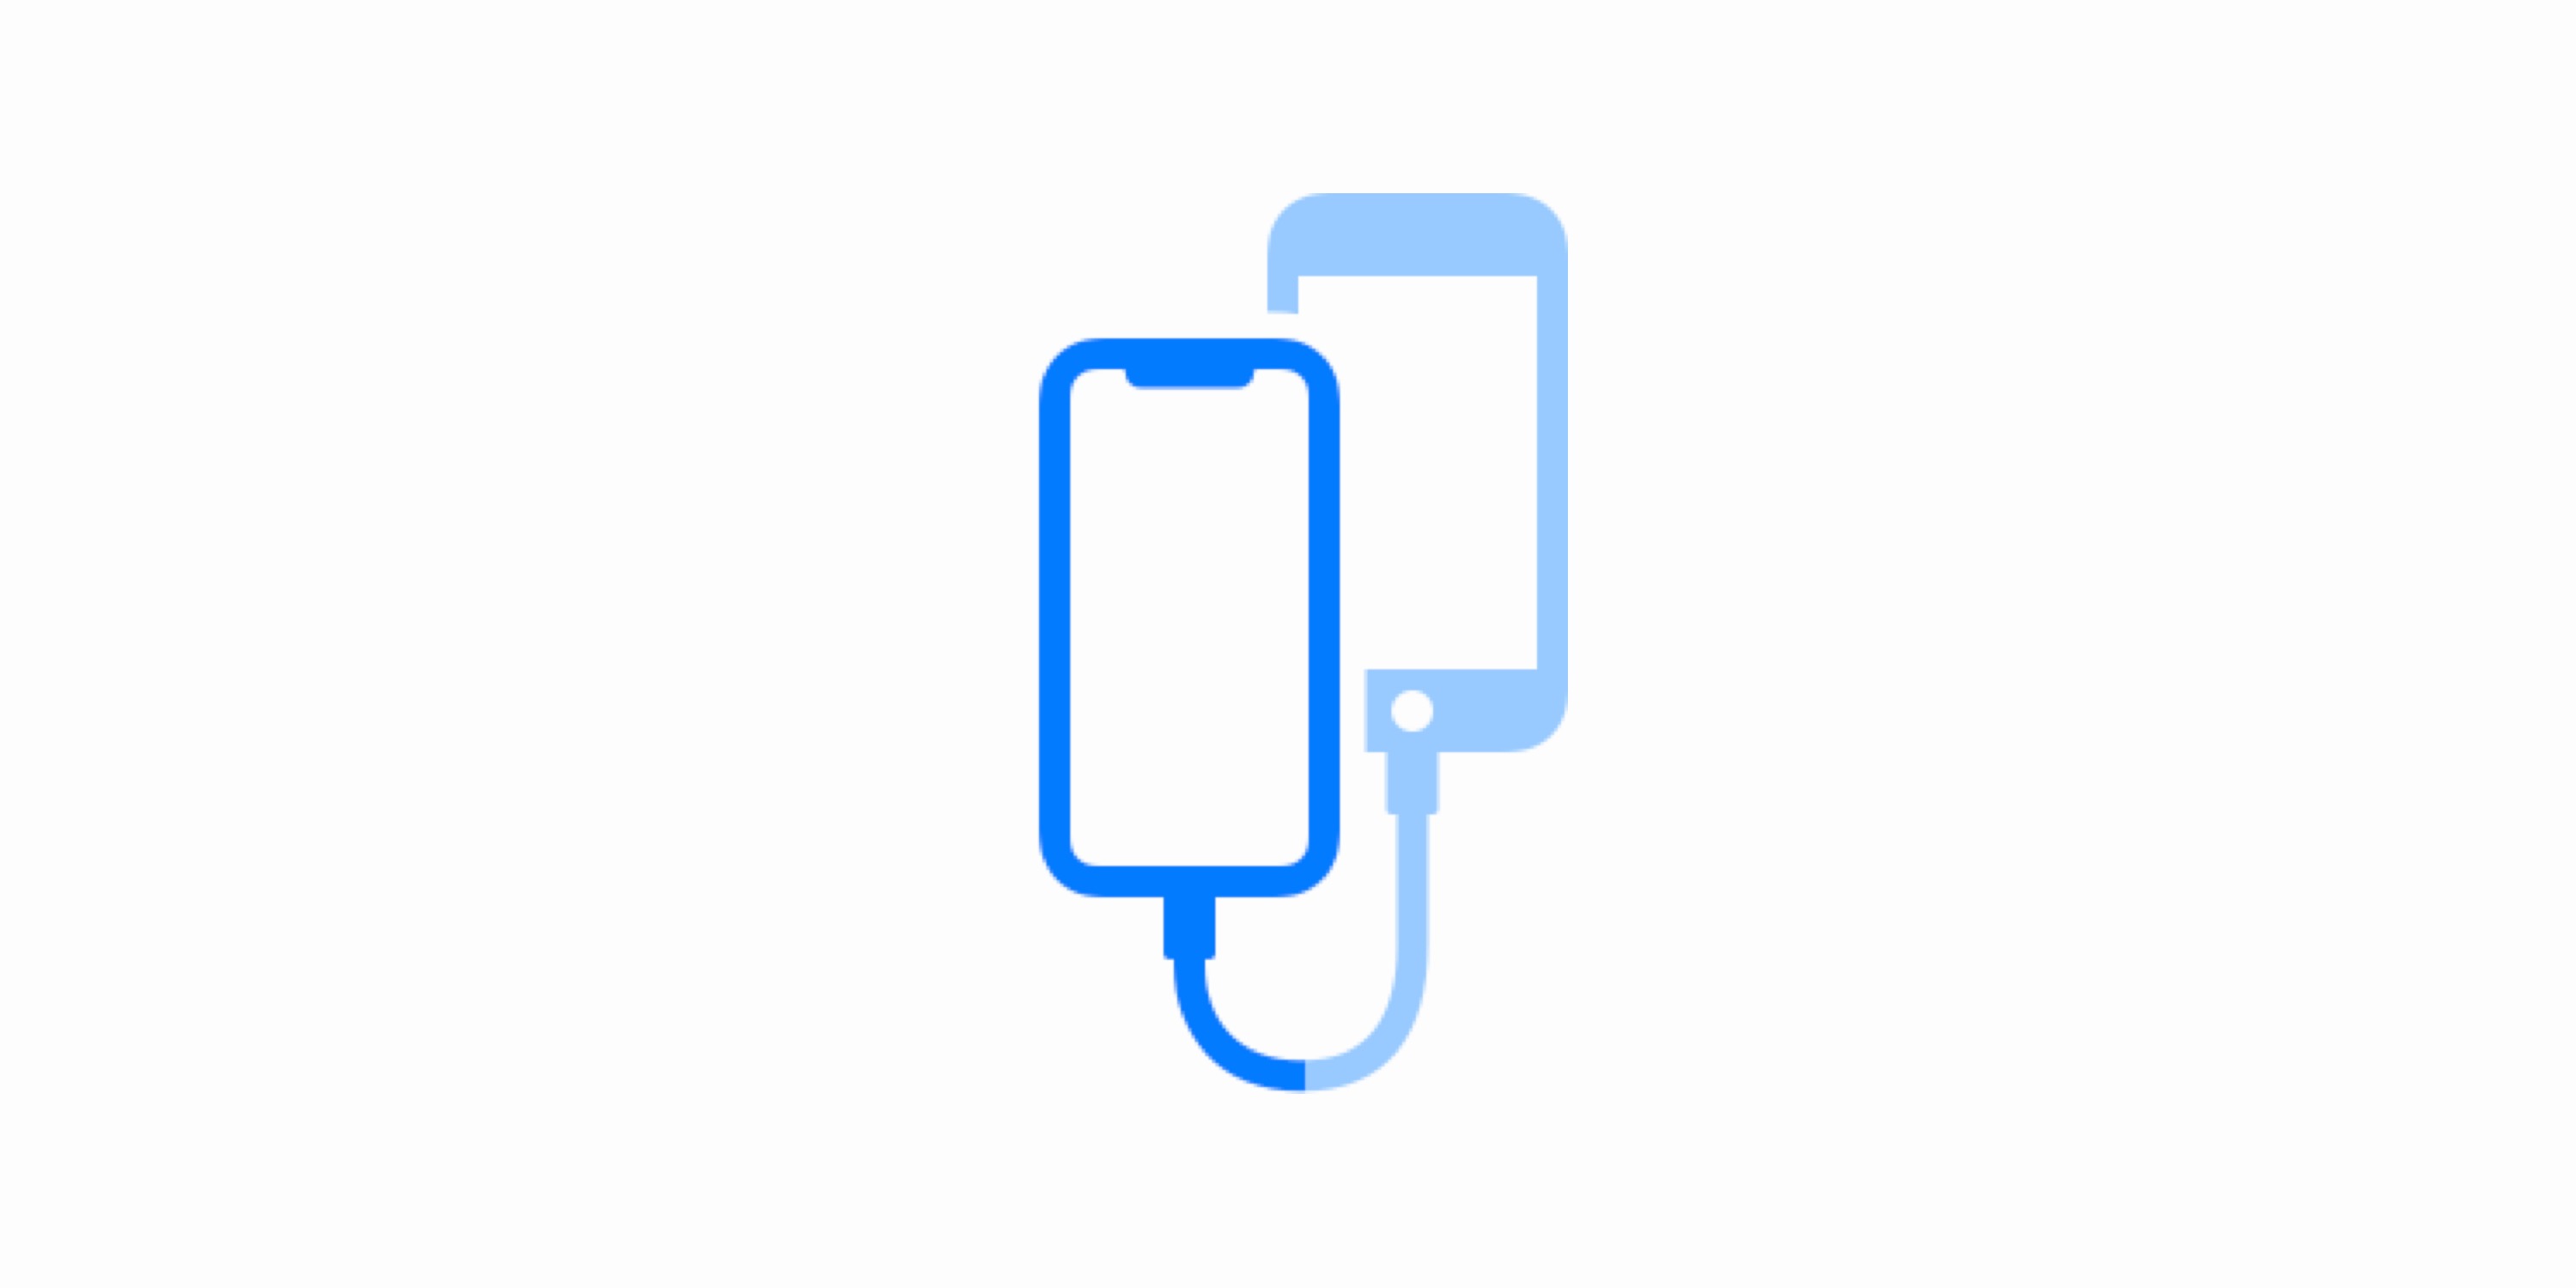 iOS 13 údajně umožní uživatelům propojit dva iPhony jedním kabelem